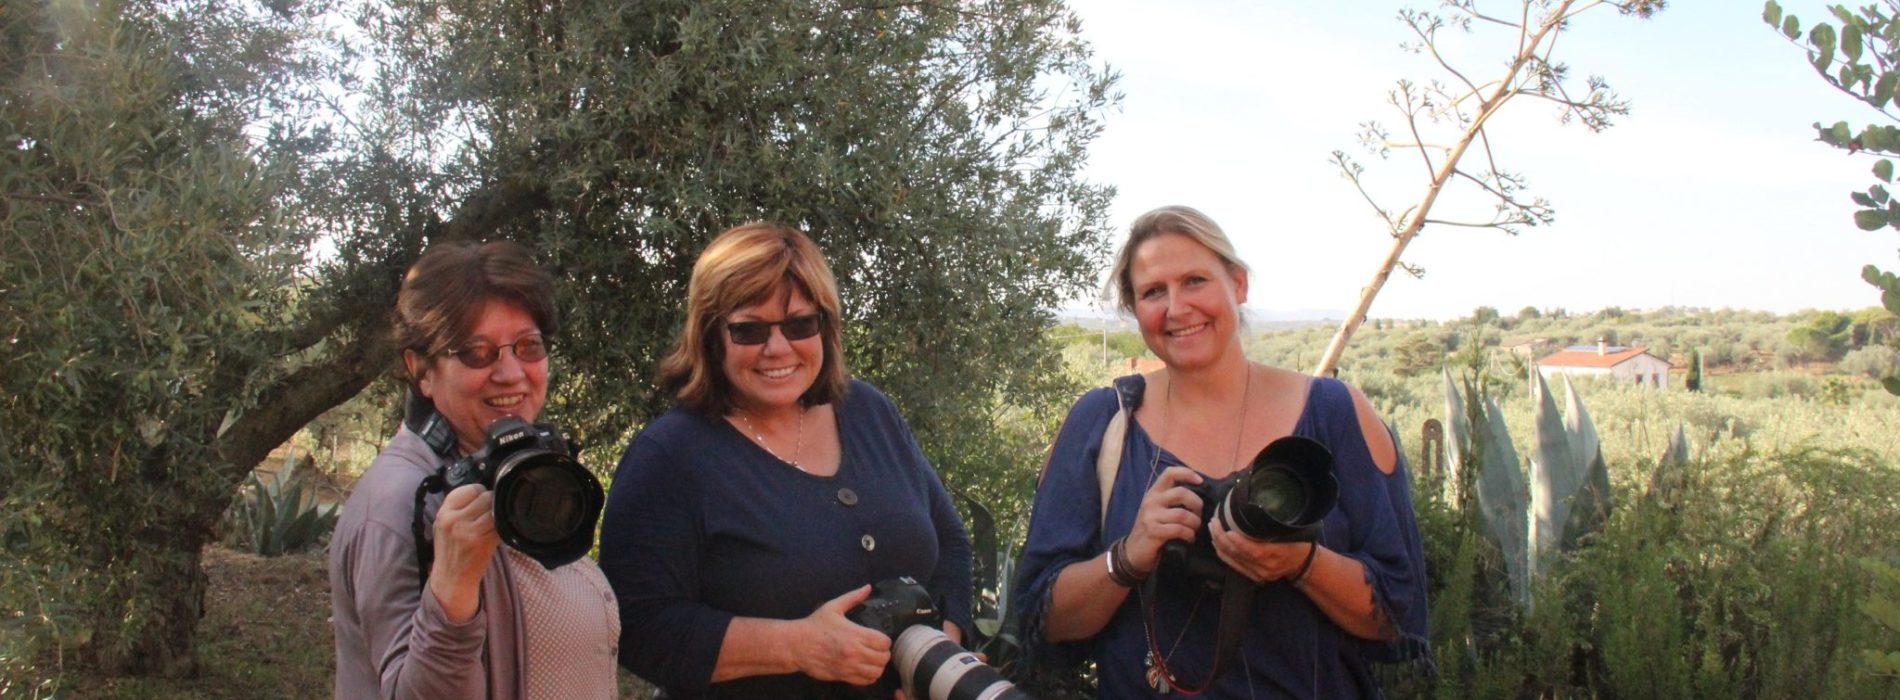 La Sicilia rurale antica nelle foto di tre fotografe straniere